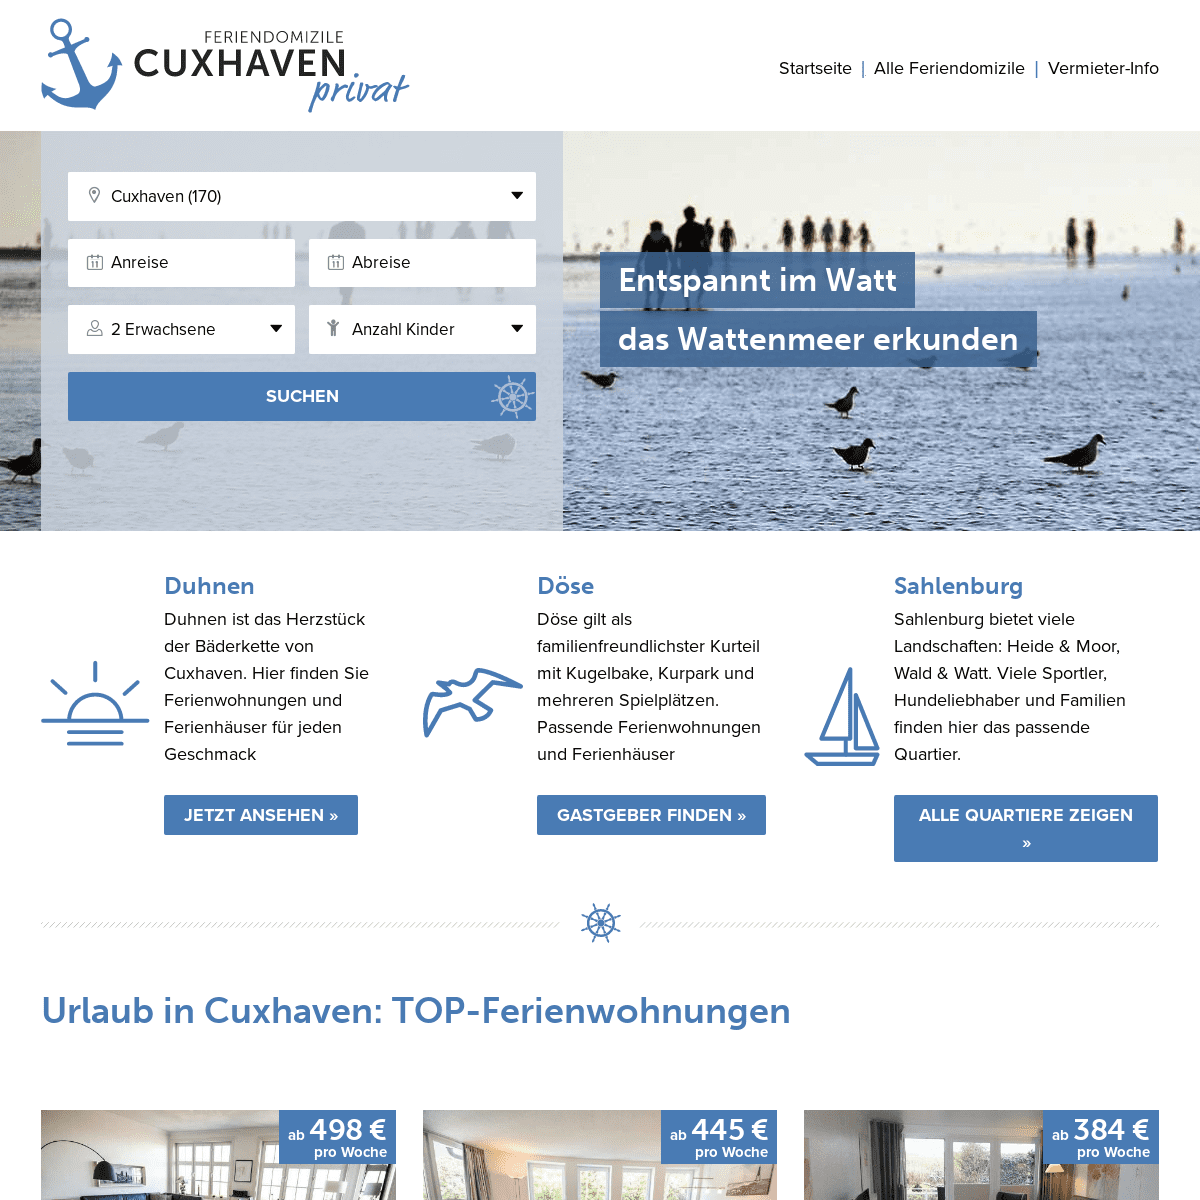 A complete backup of cuxhaven-privat.de